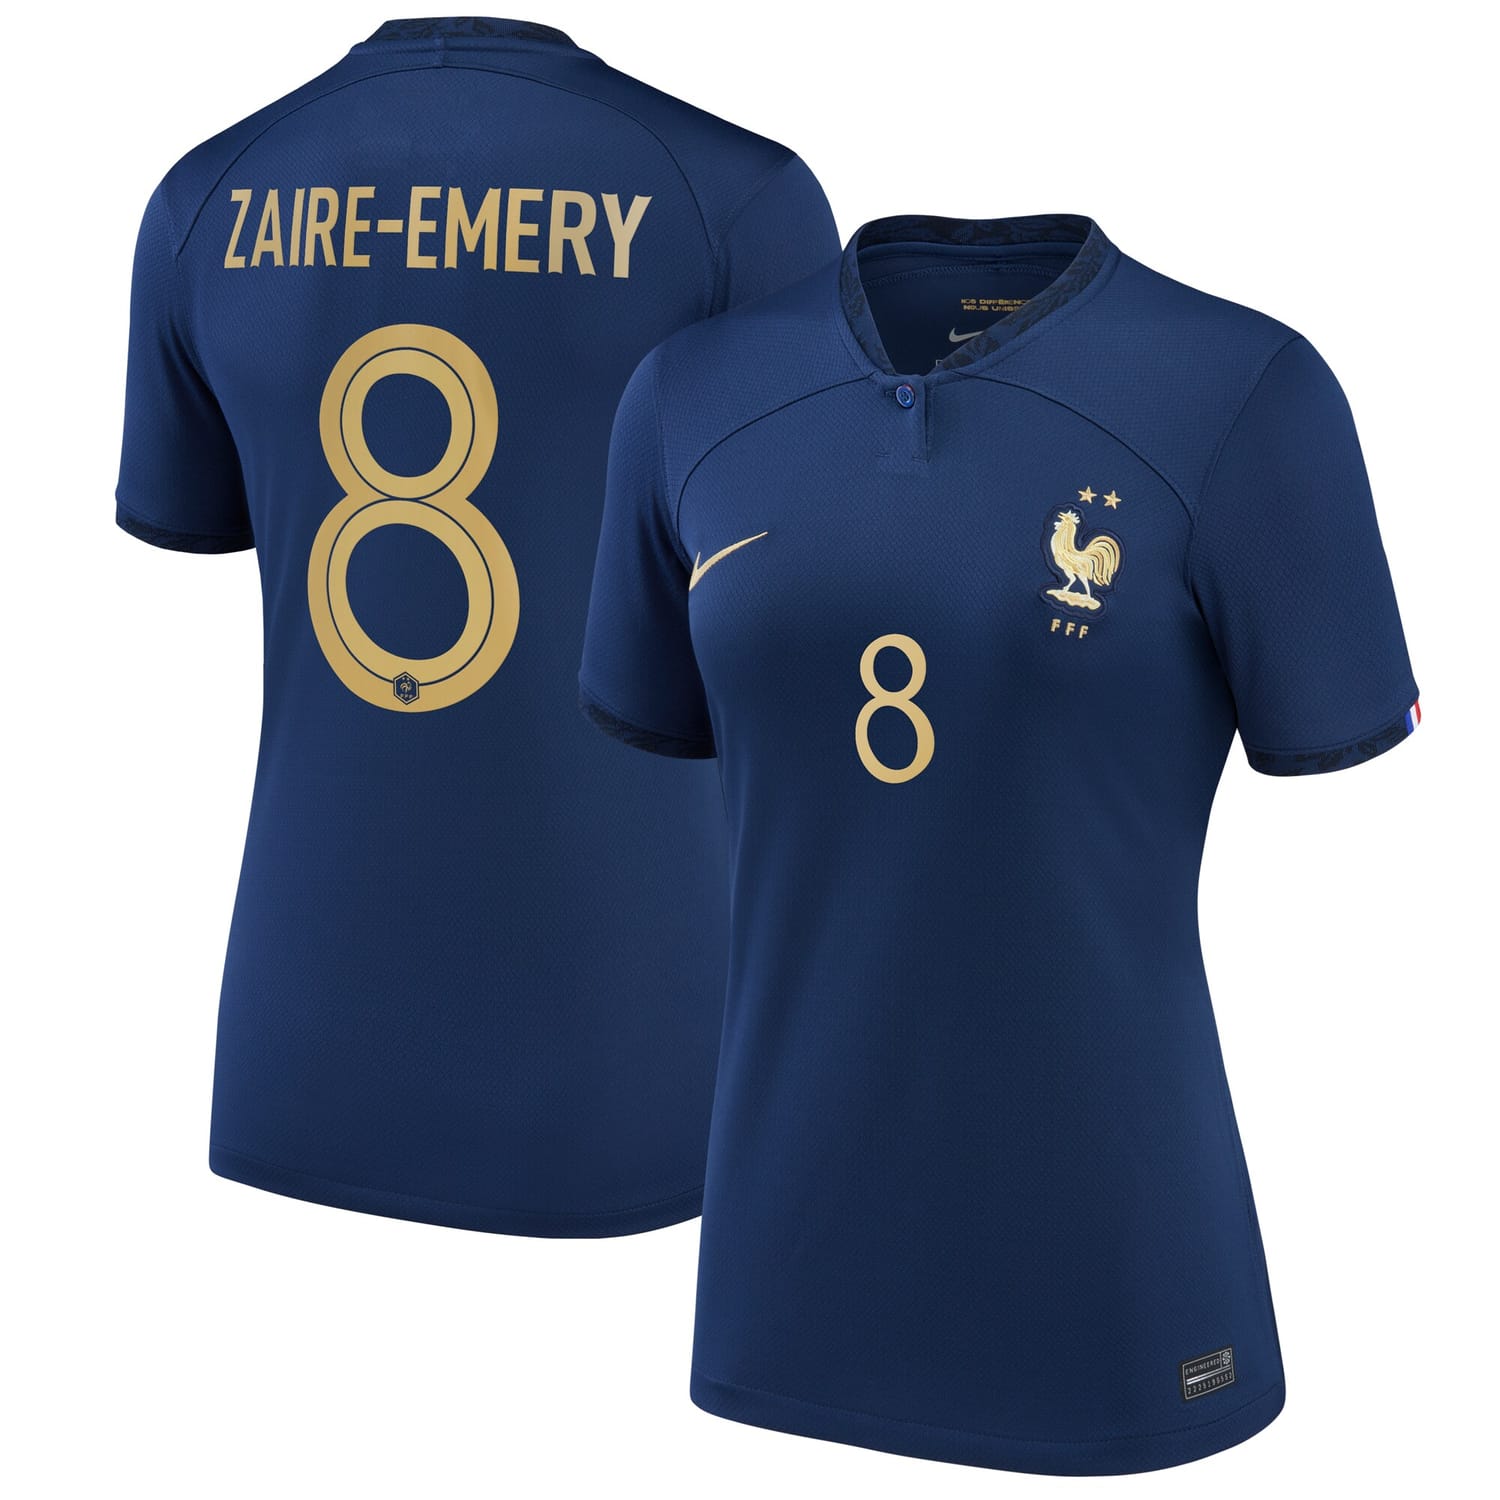 France National Team Home Jersey Shirt 2022 player Warren Zaïre-Emery 8 printing for Women